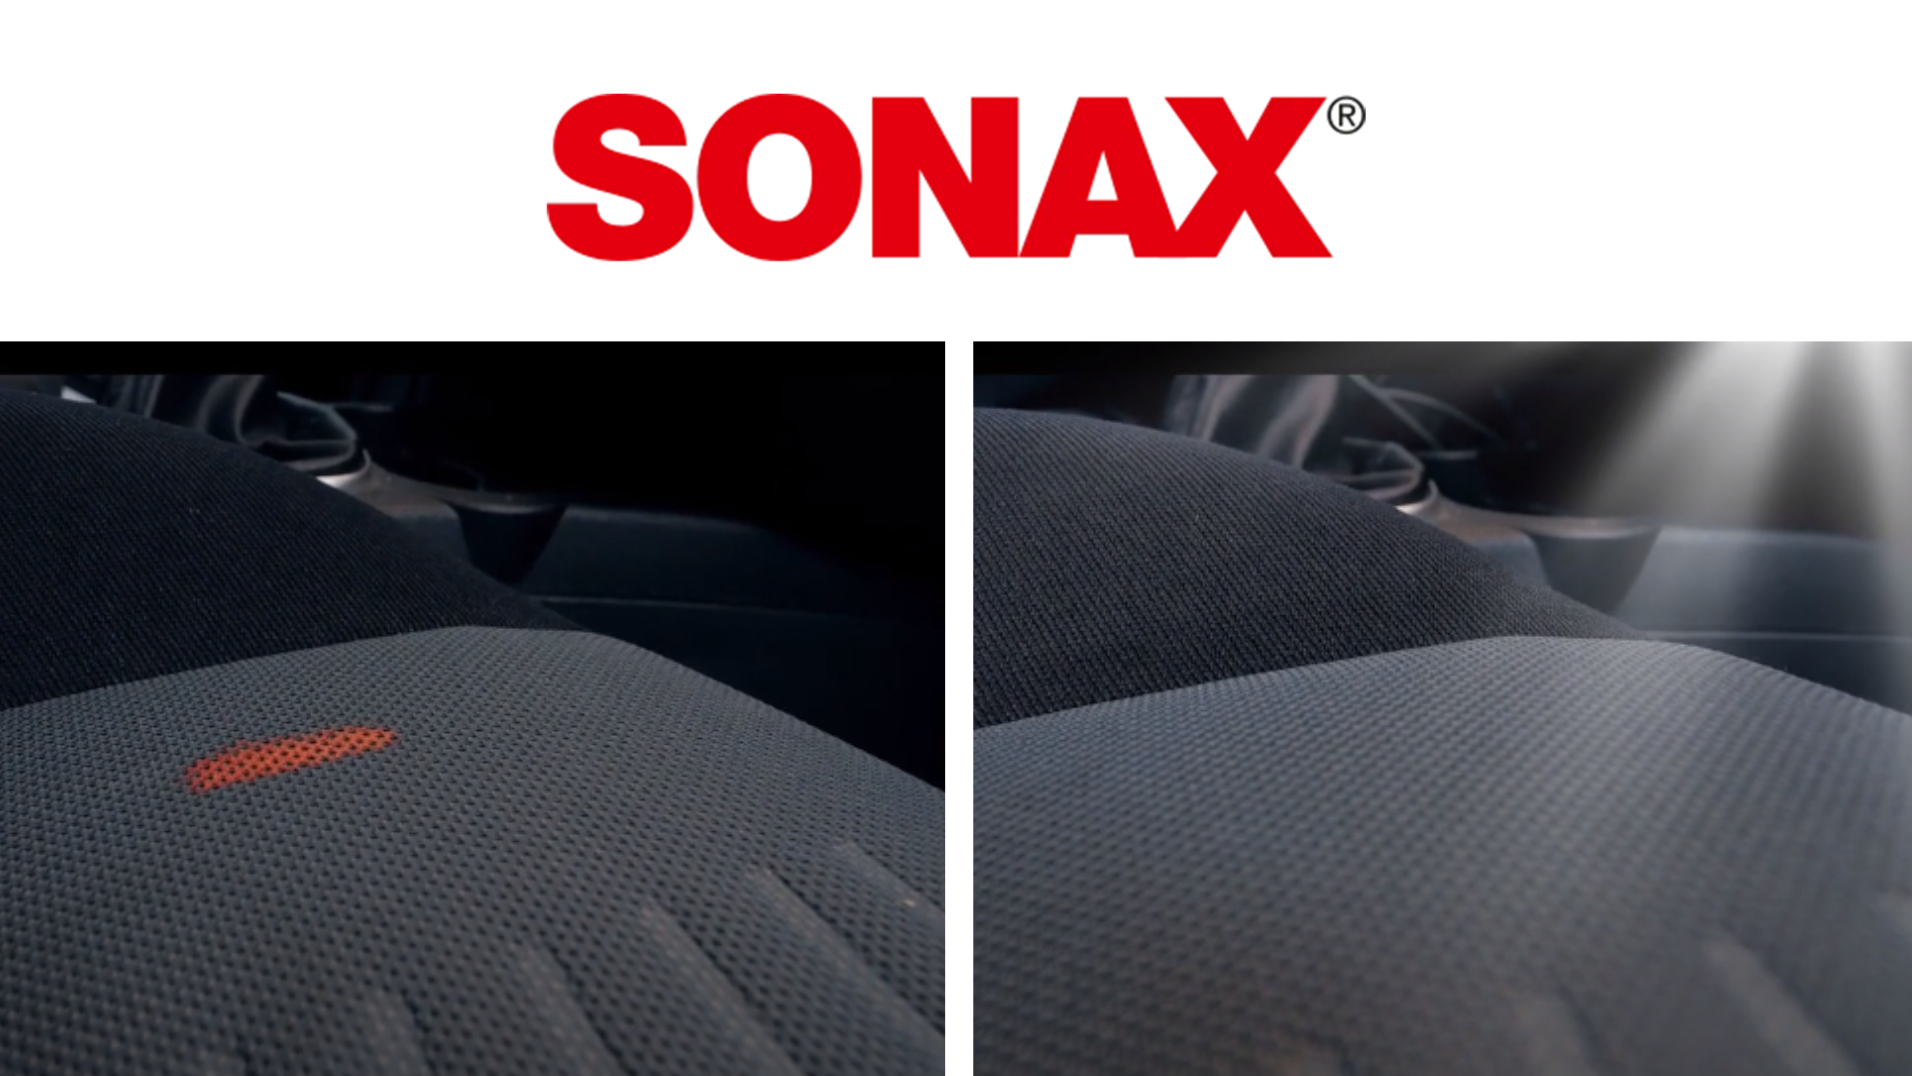 SONAX odplamiacz usunął plamy,  łatwy w użyciu z przyjemnym zapachem usuwa plamy, po plamach pozostał świeży zapach